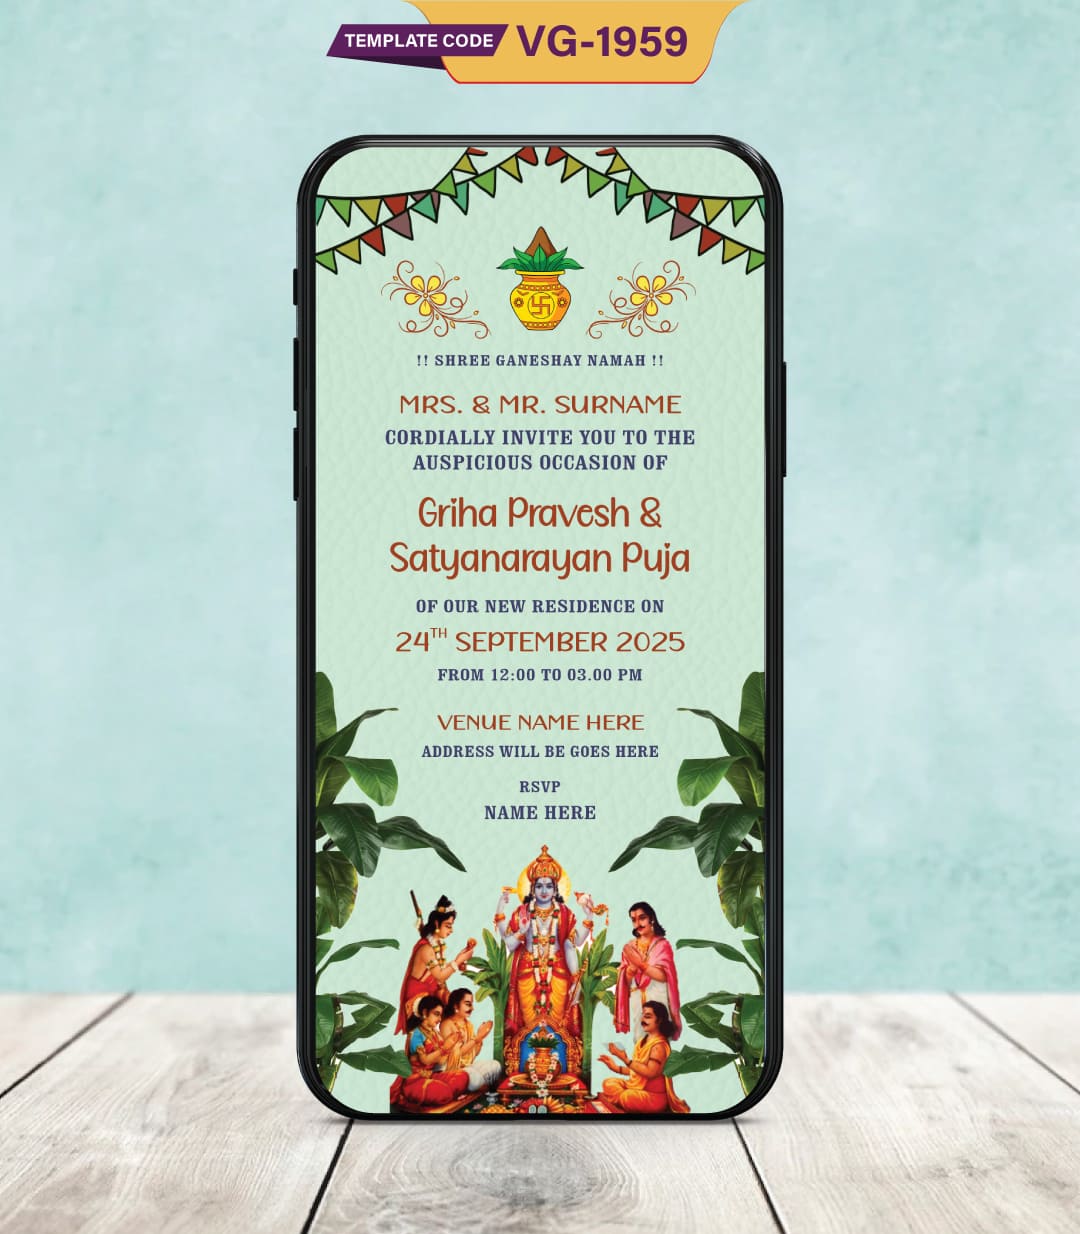 Griha Pravesh & Satyanarayan Puja Invitation Card